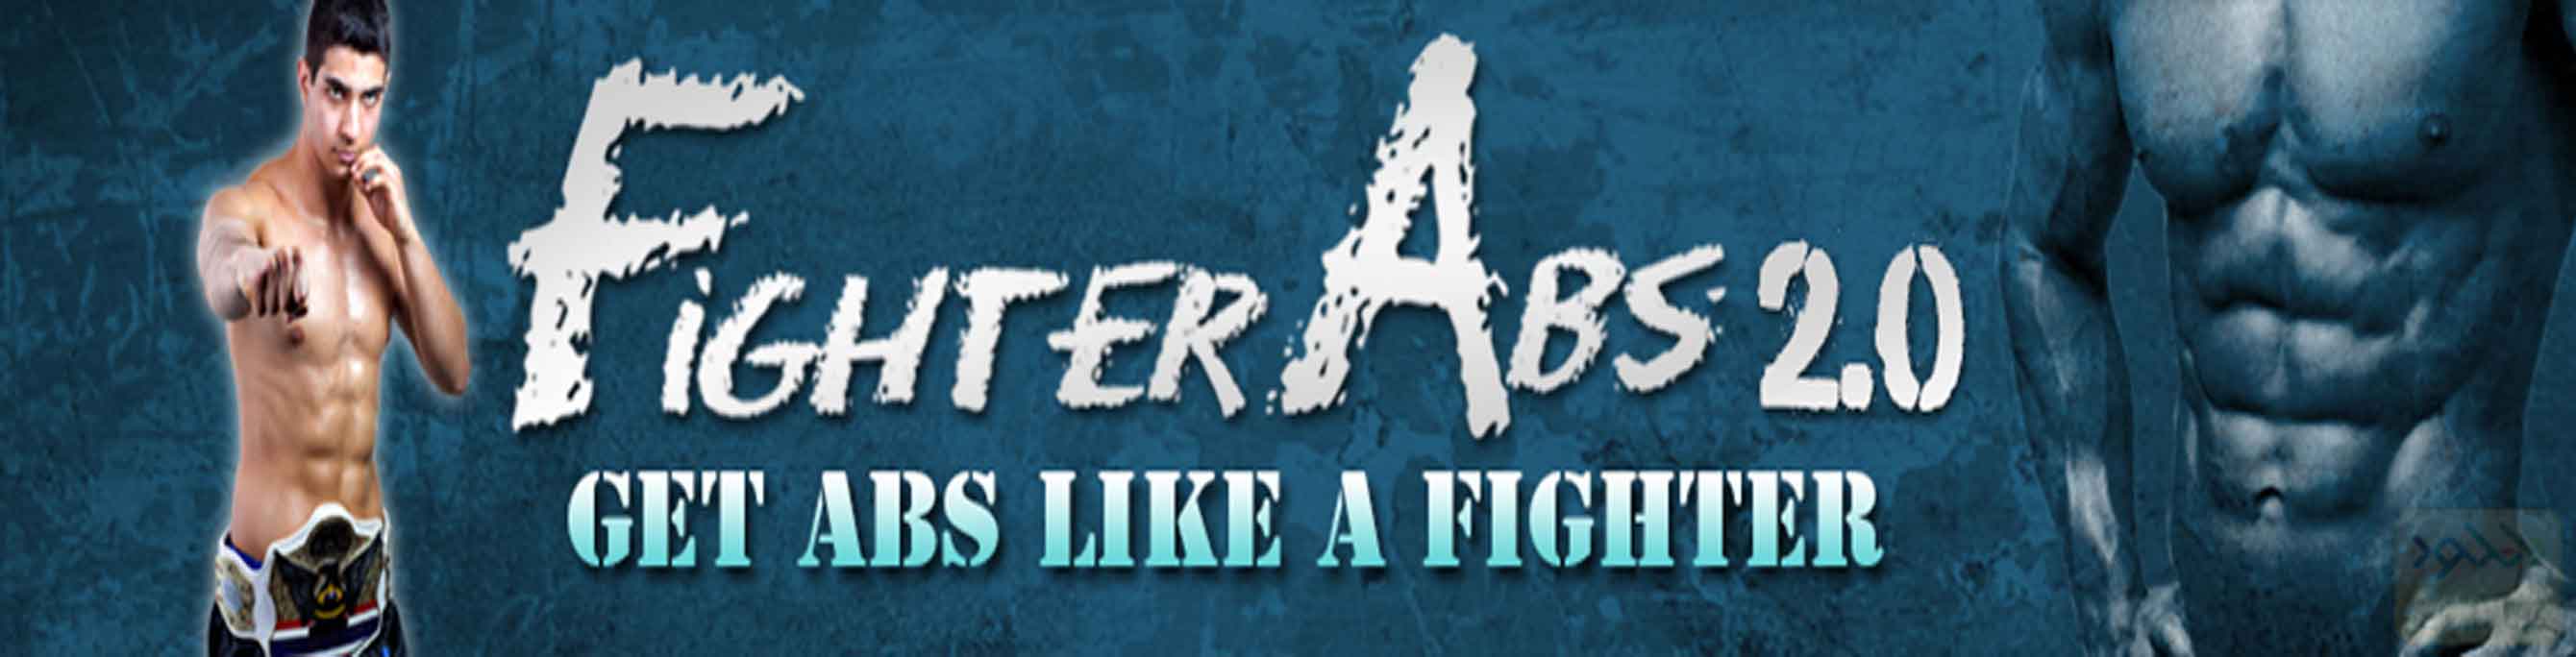 دانلود فیلم آموزشی Fighter Abs 2.0 by Andrew Raposo